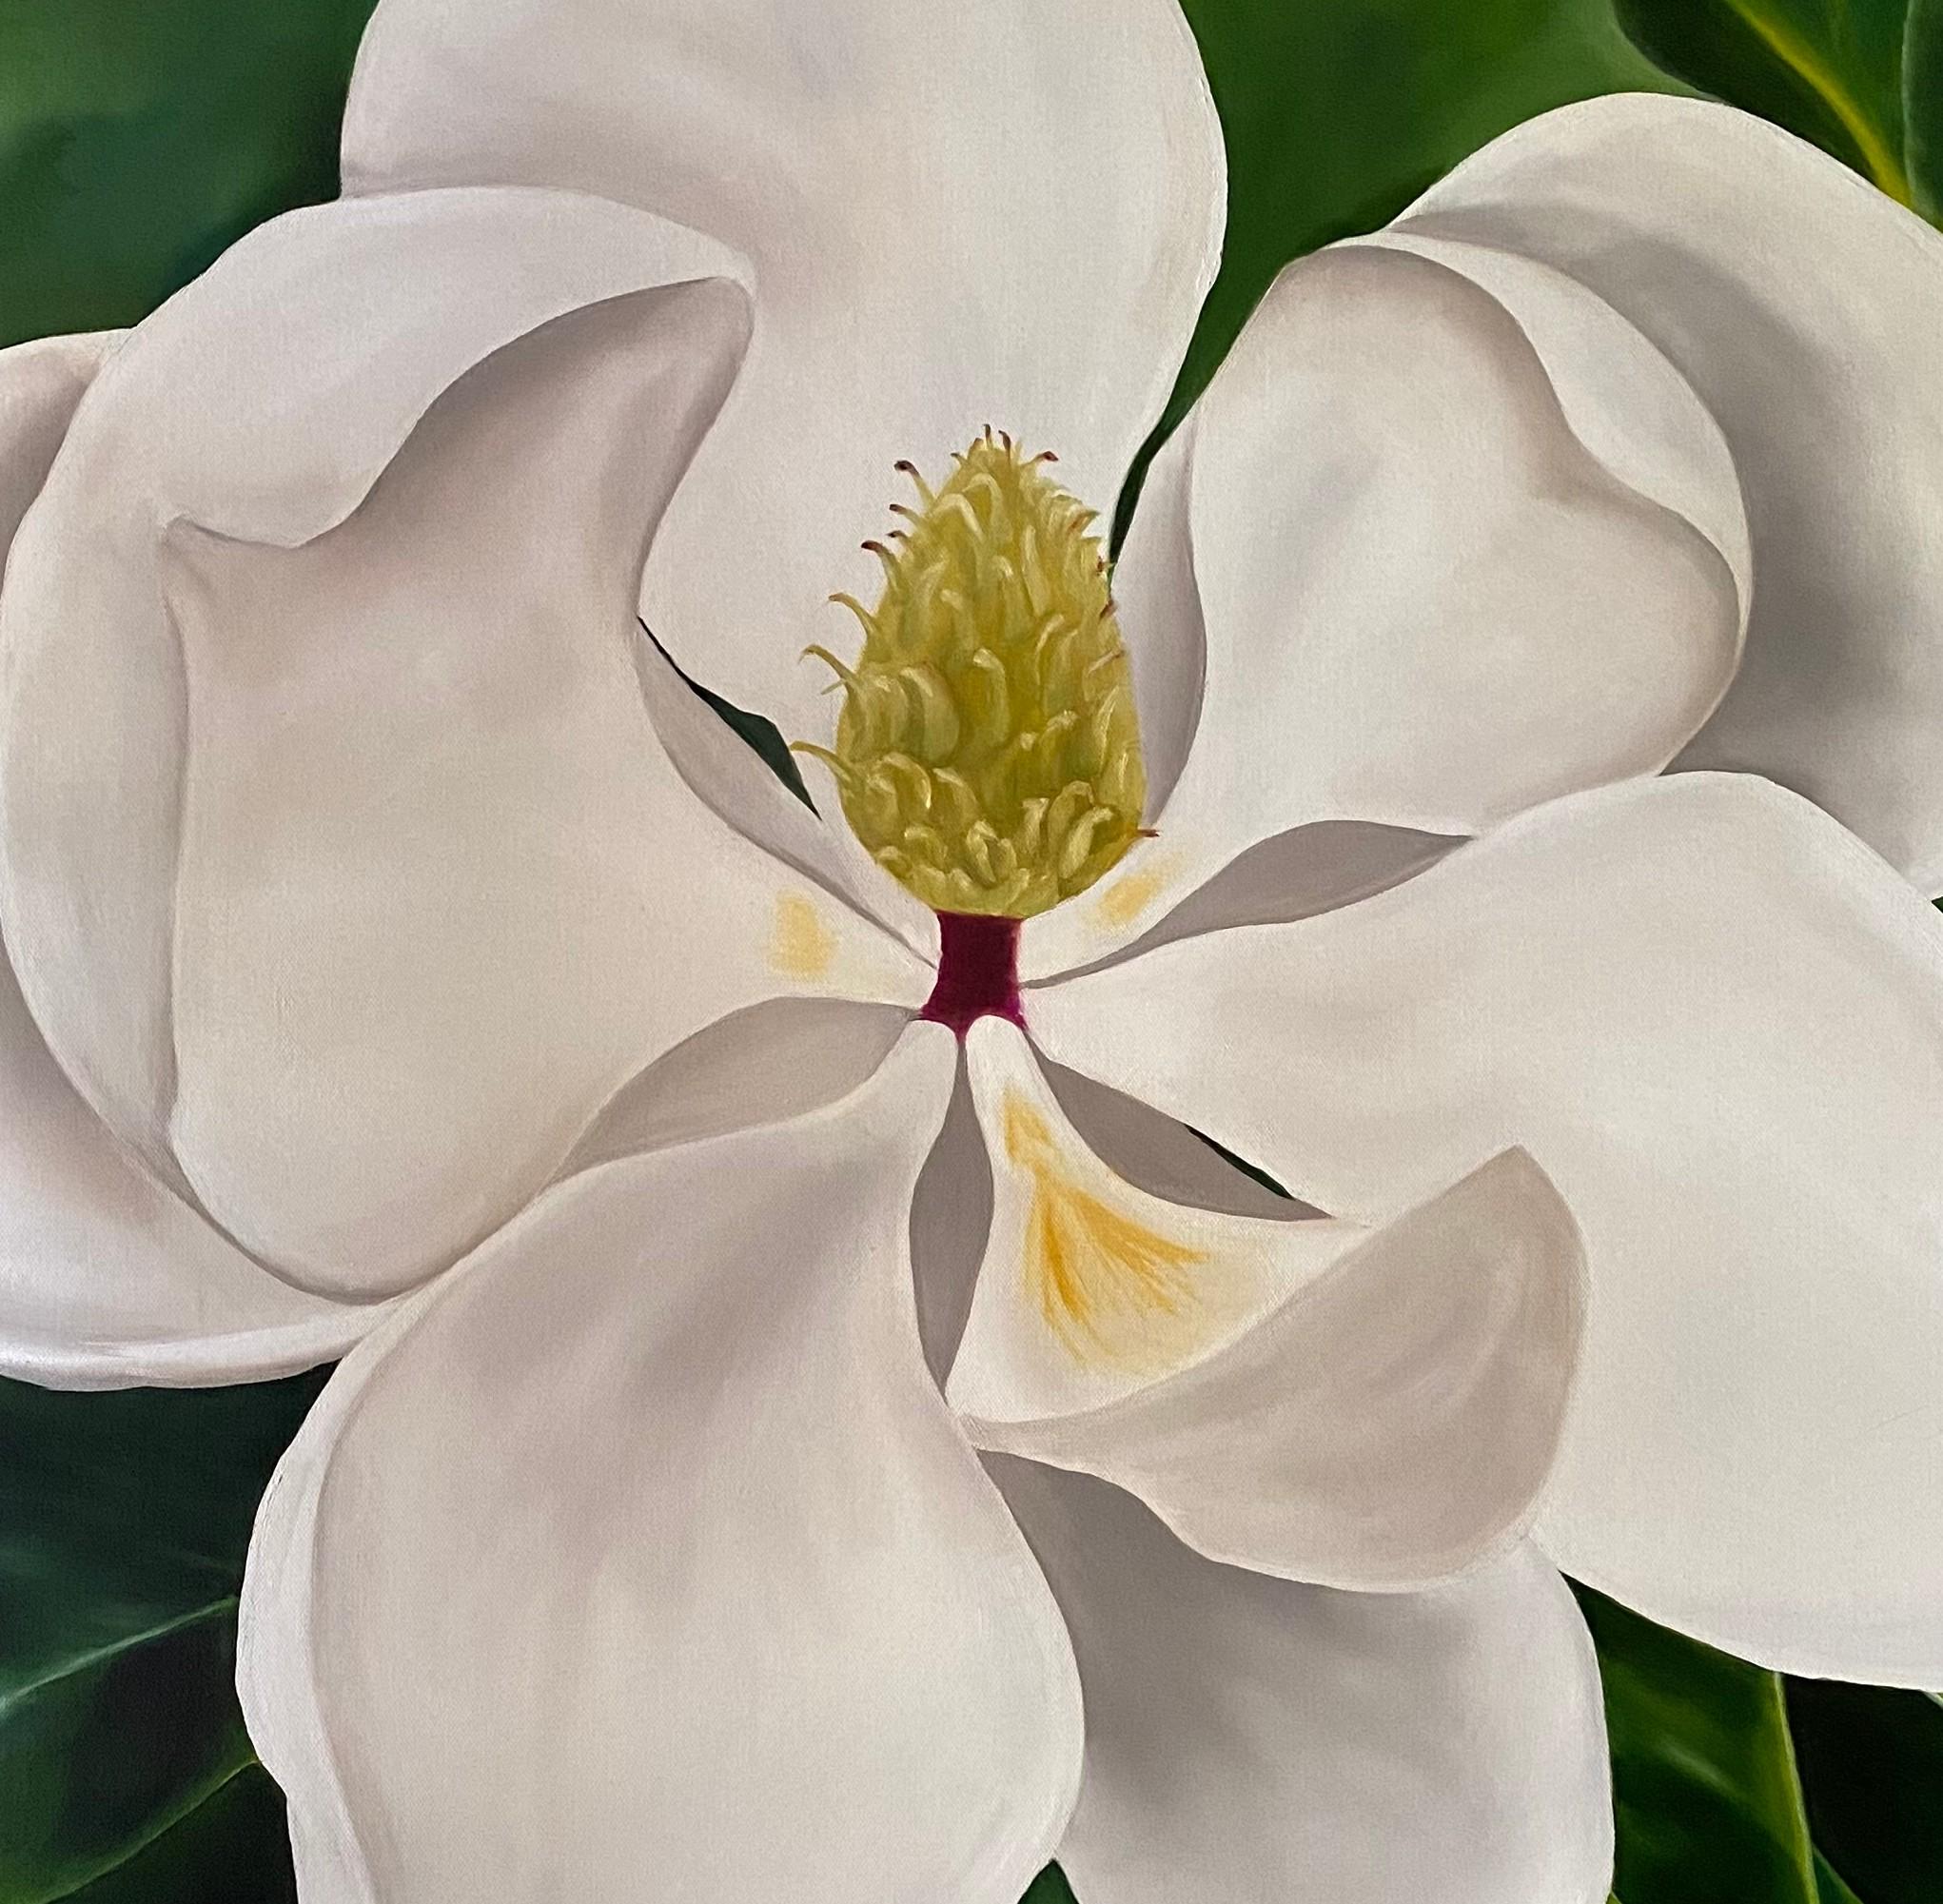  Magnolia géant  Réalisme 36 x 36 Huile sur toile - Galerie enveloppée   Fleuri - Painting de Susan Meeks